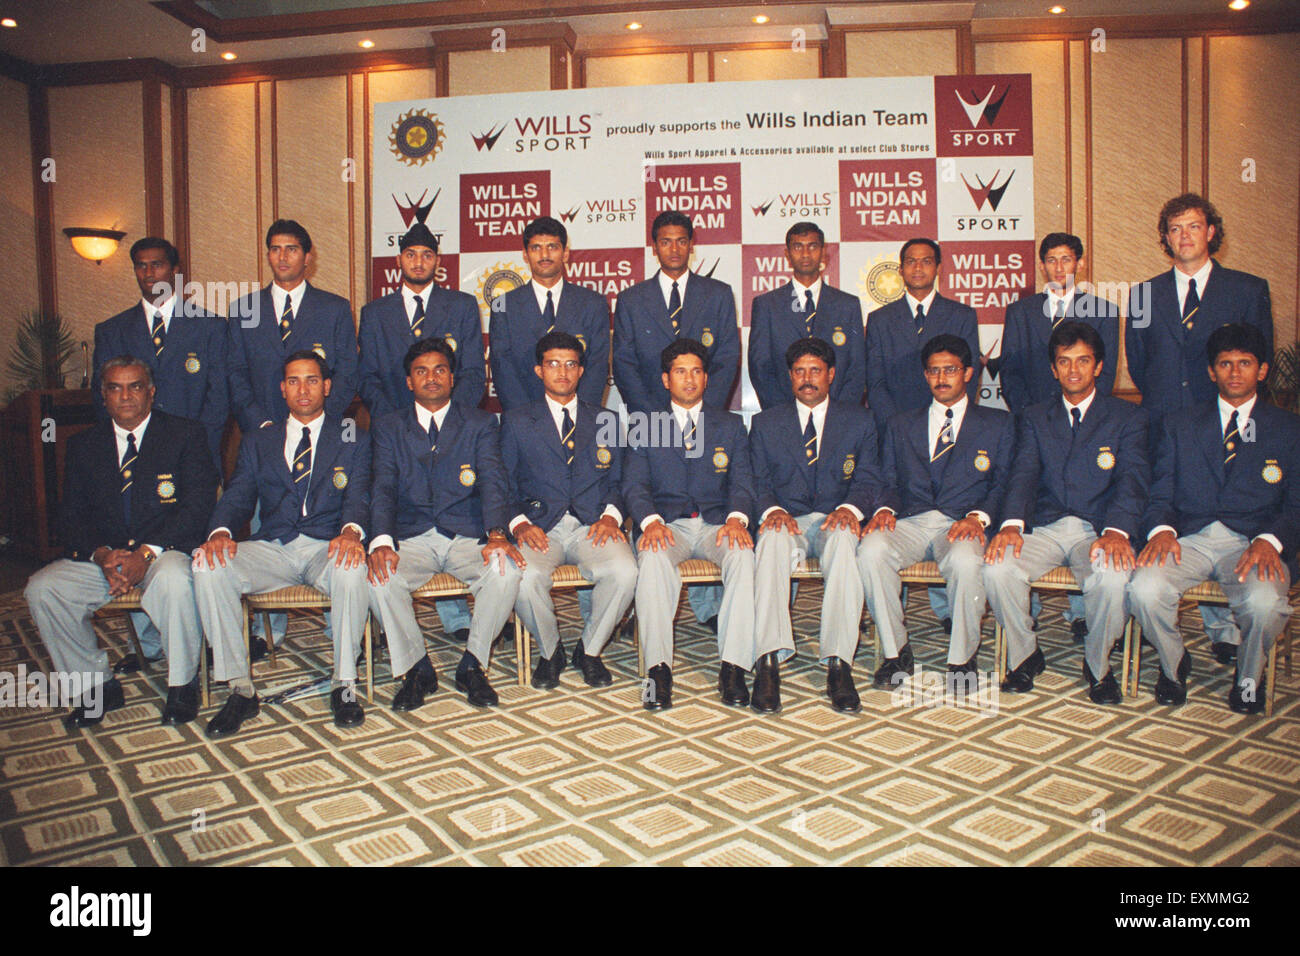 Squadra indiana di cricket per l'Australia, Sachin Tendulkar, Kapil Dev, Sourov Ganguly, Harbhajan Singh, Rahul Dravid, India, Asia, Wills Sport, squadra indiana Wills Foto Stock